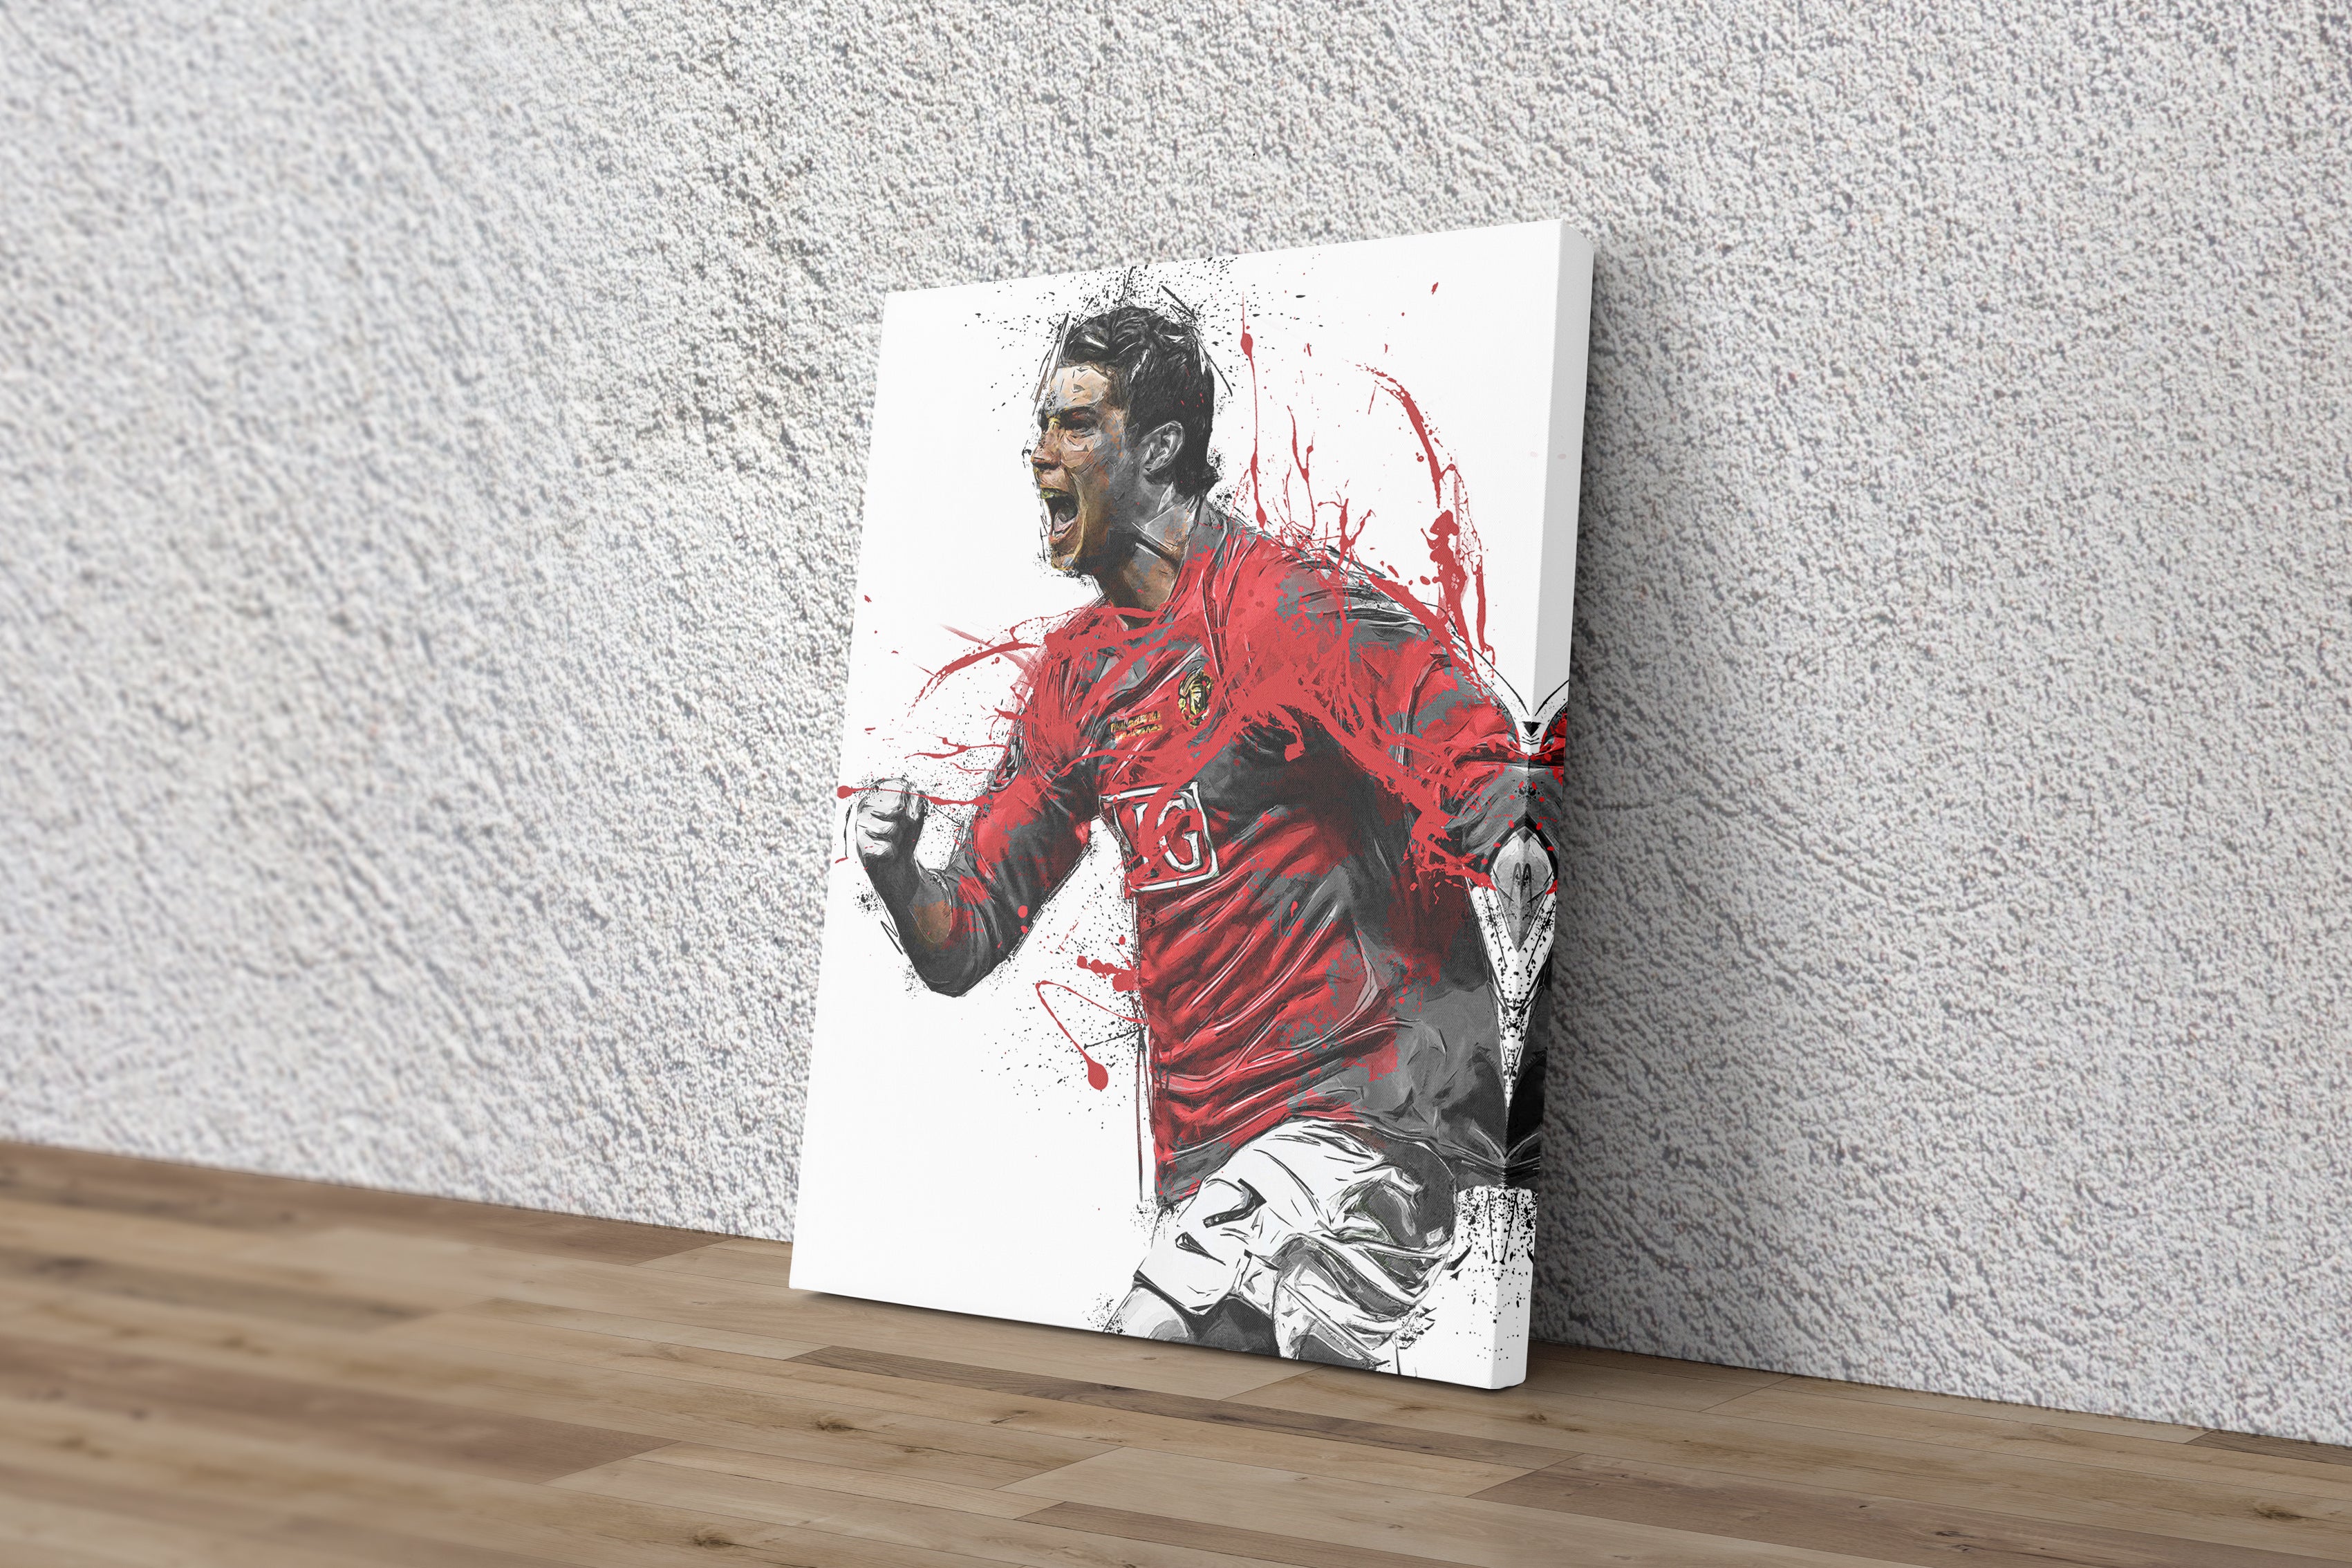 Cristiano Ronaldo Portugal - Cristiano Ronaldo - Posters and Art Prints